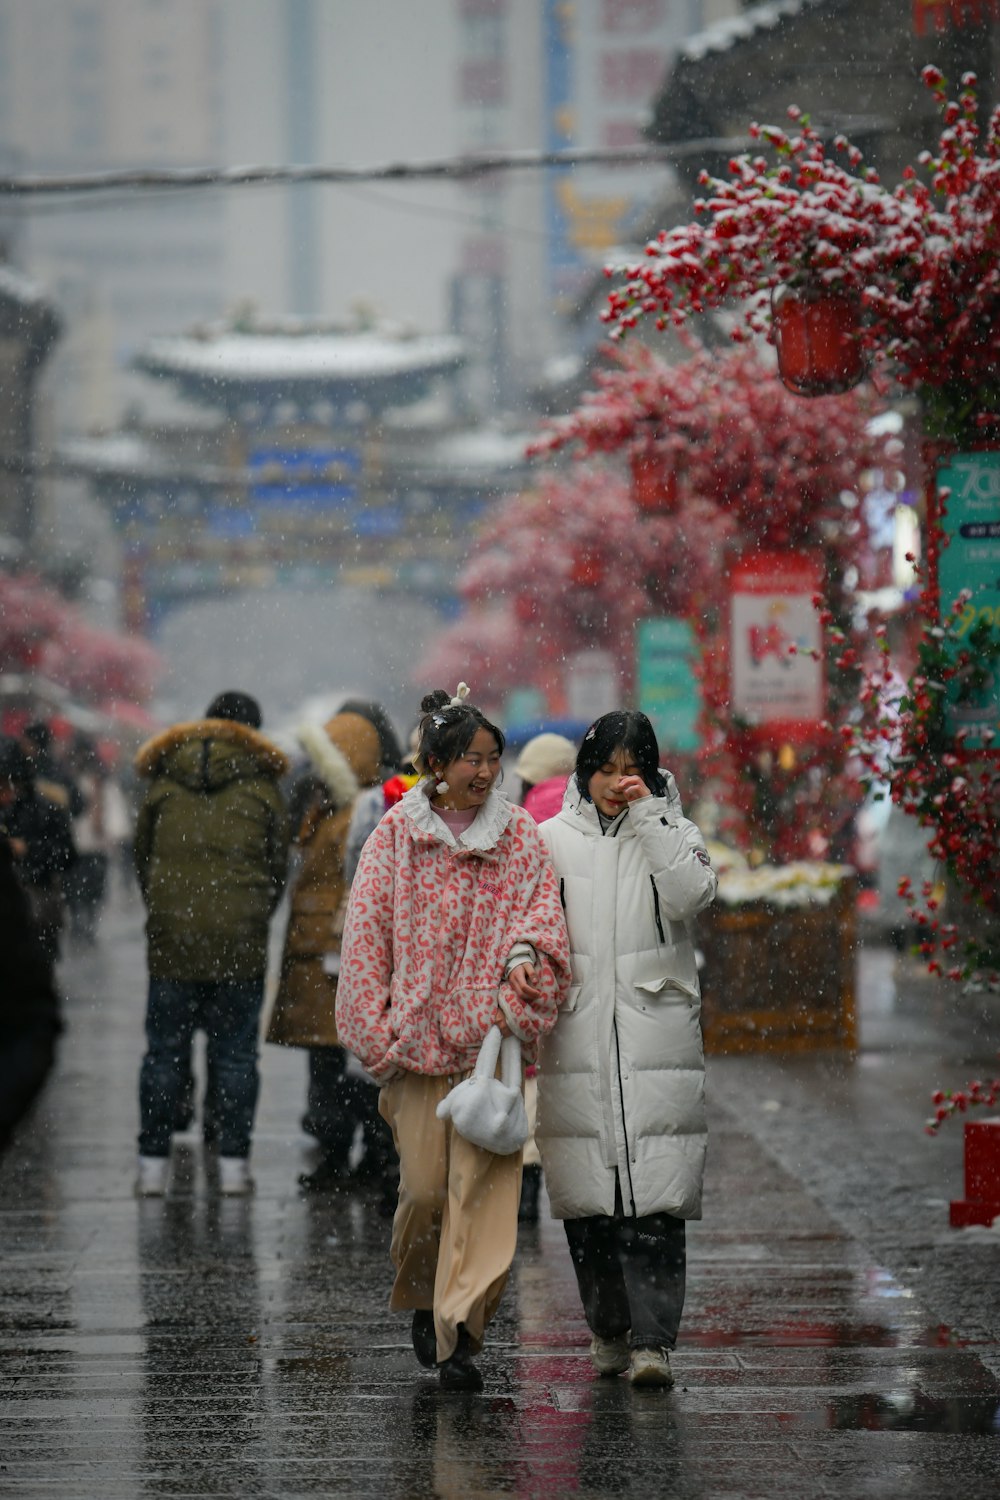 two women walking down a street in the rain